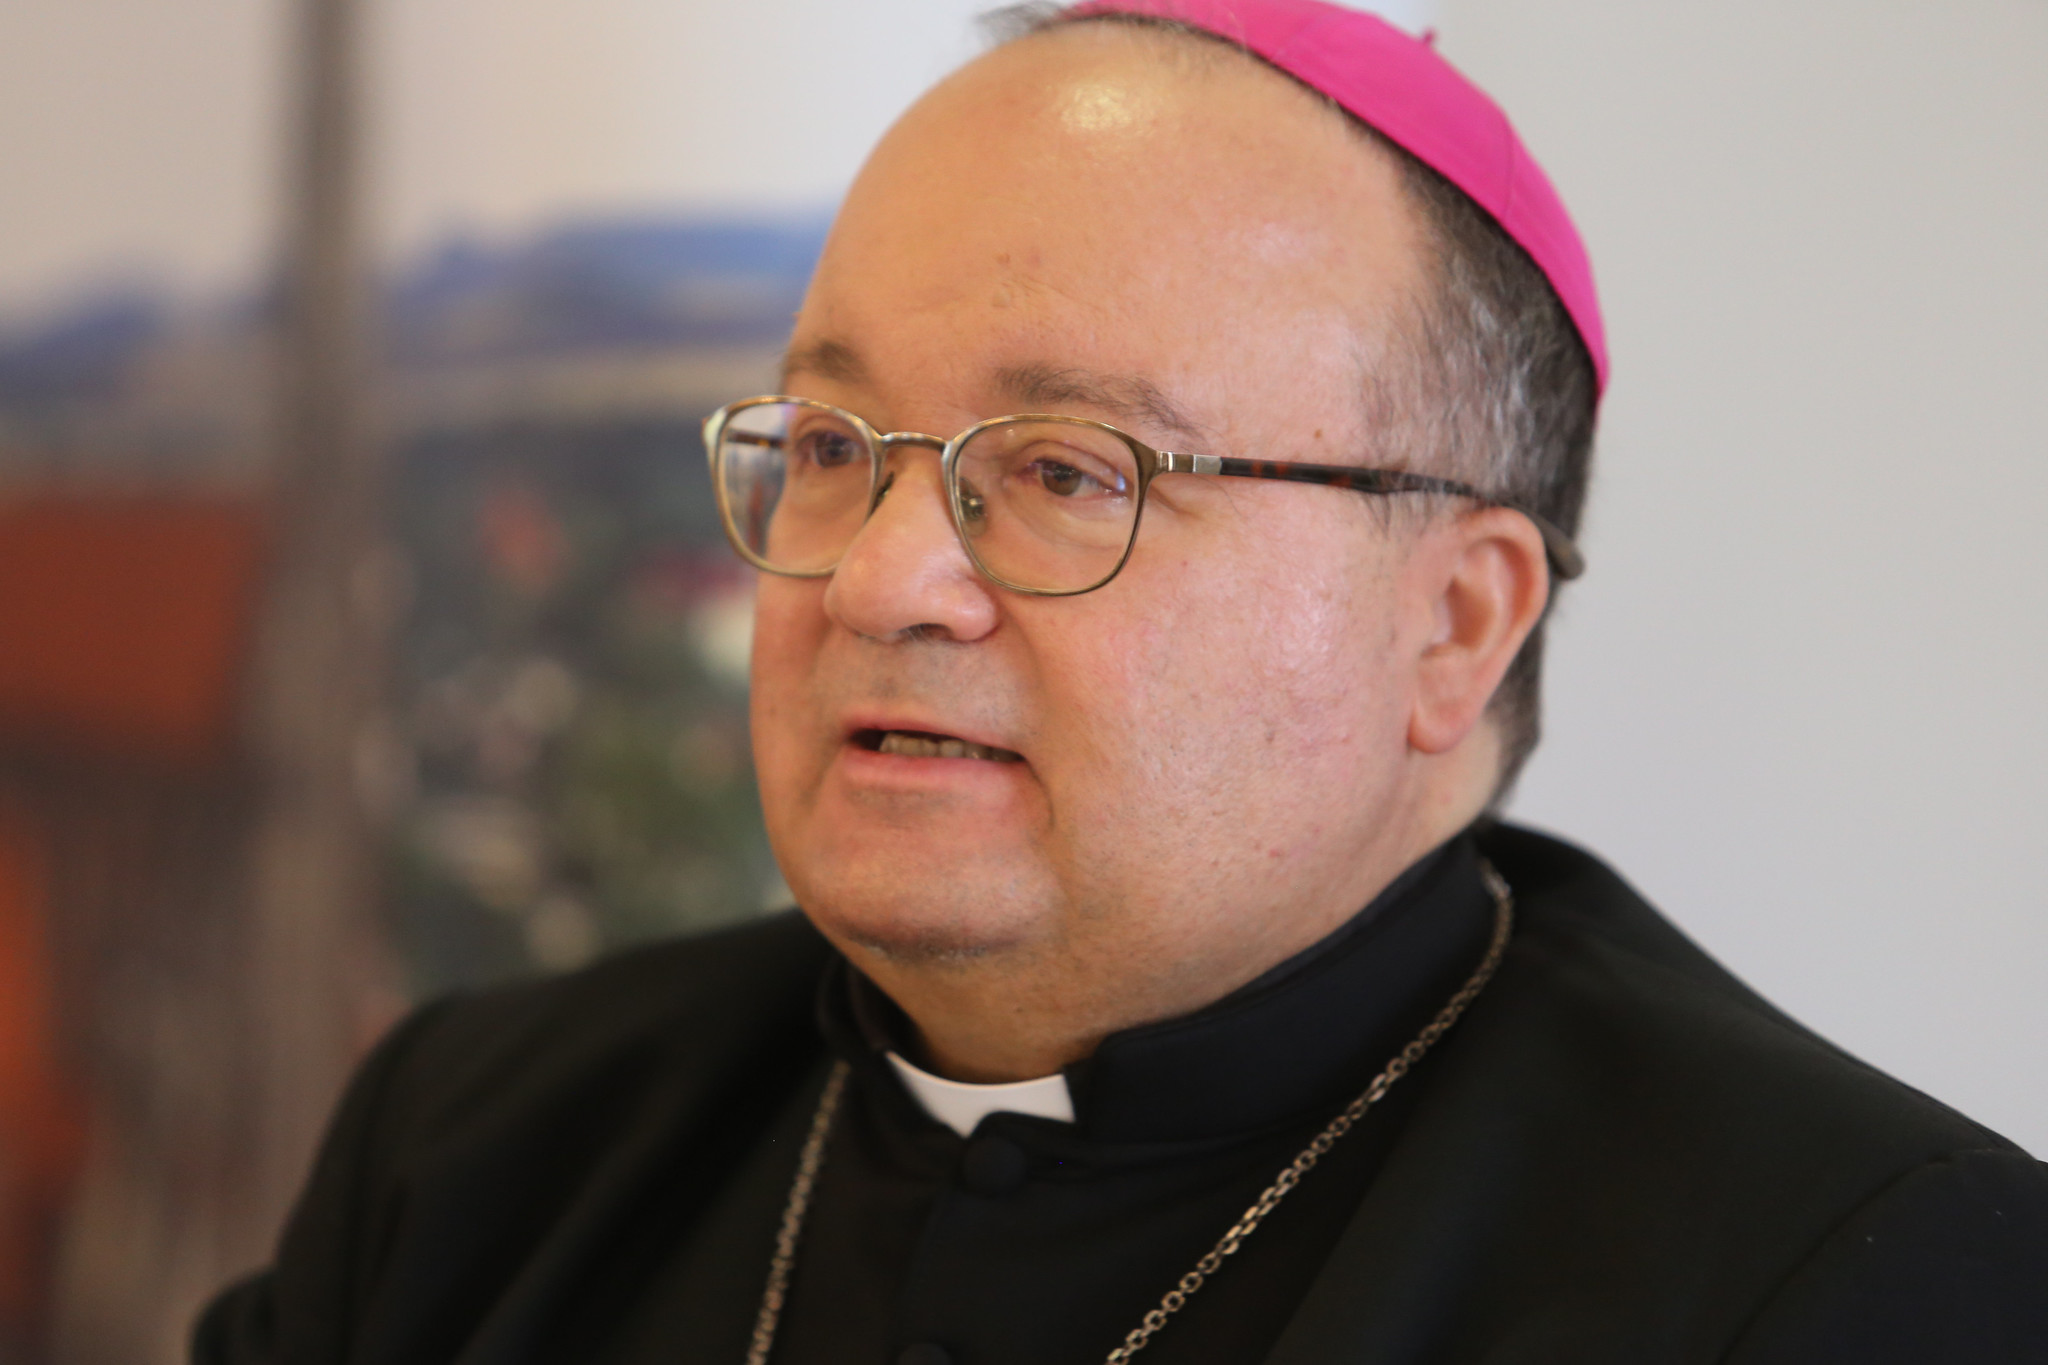 Arzobispo Scicluna © Conferencia Episcopal Polaca